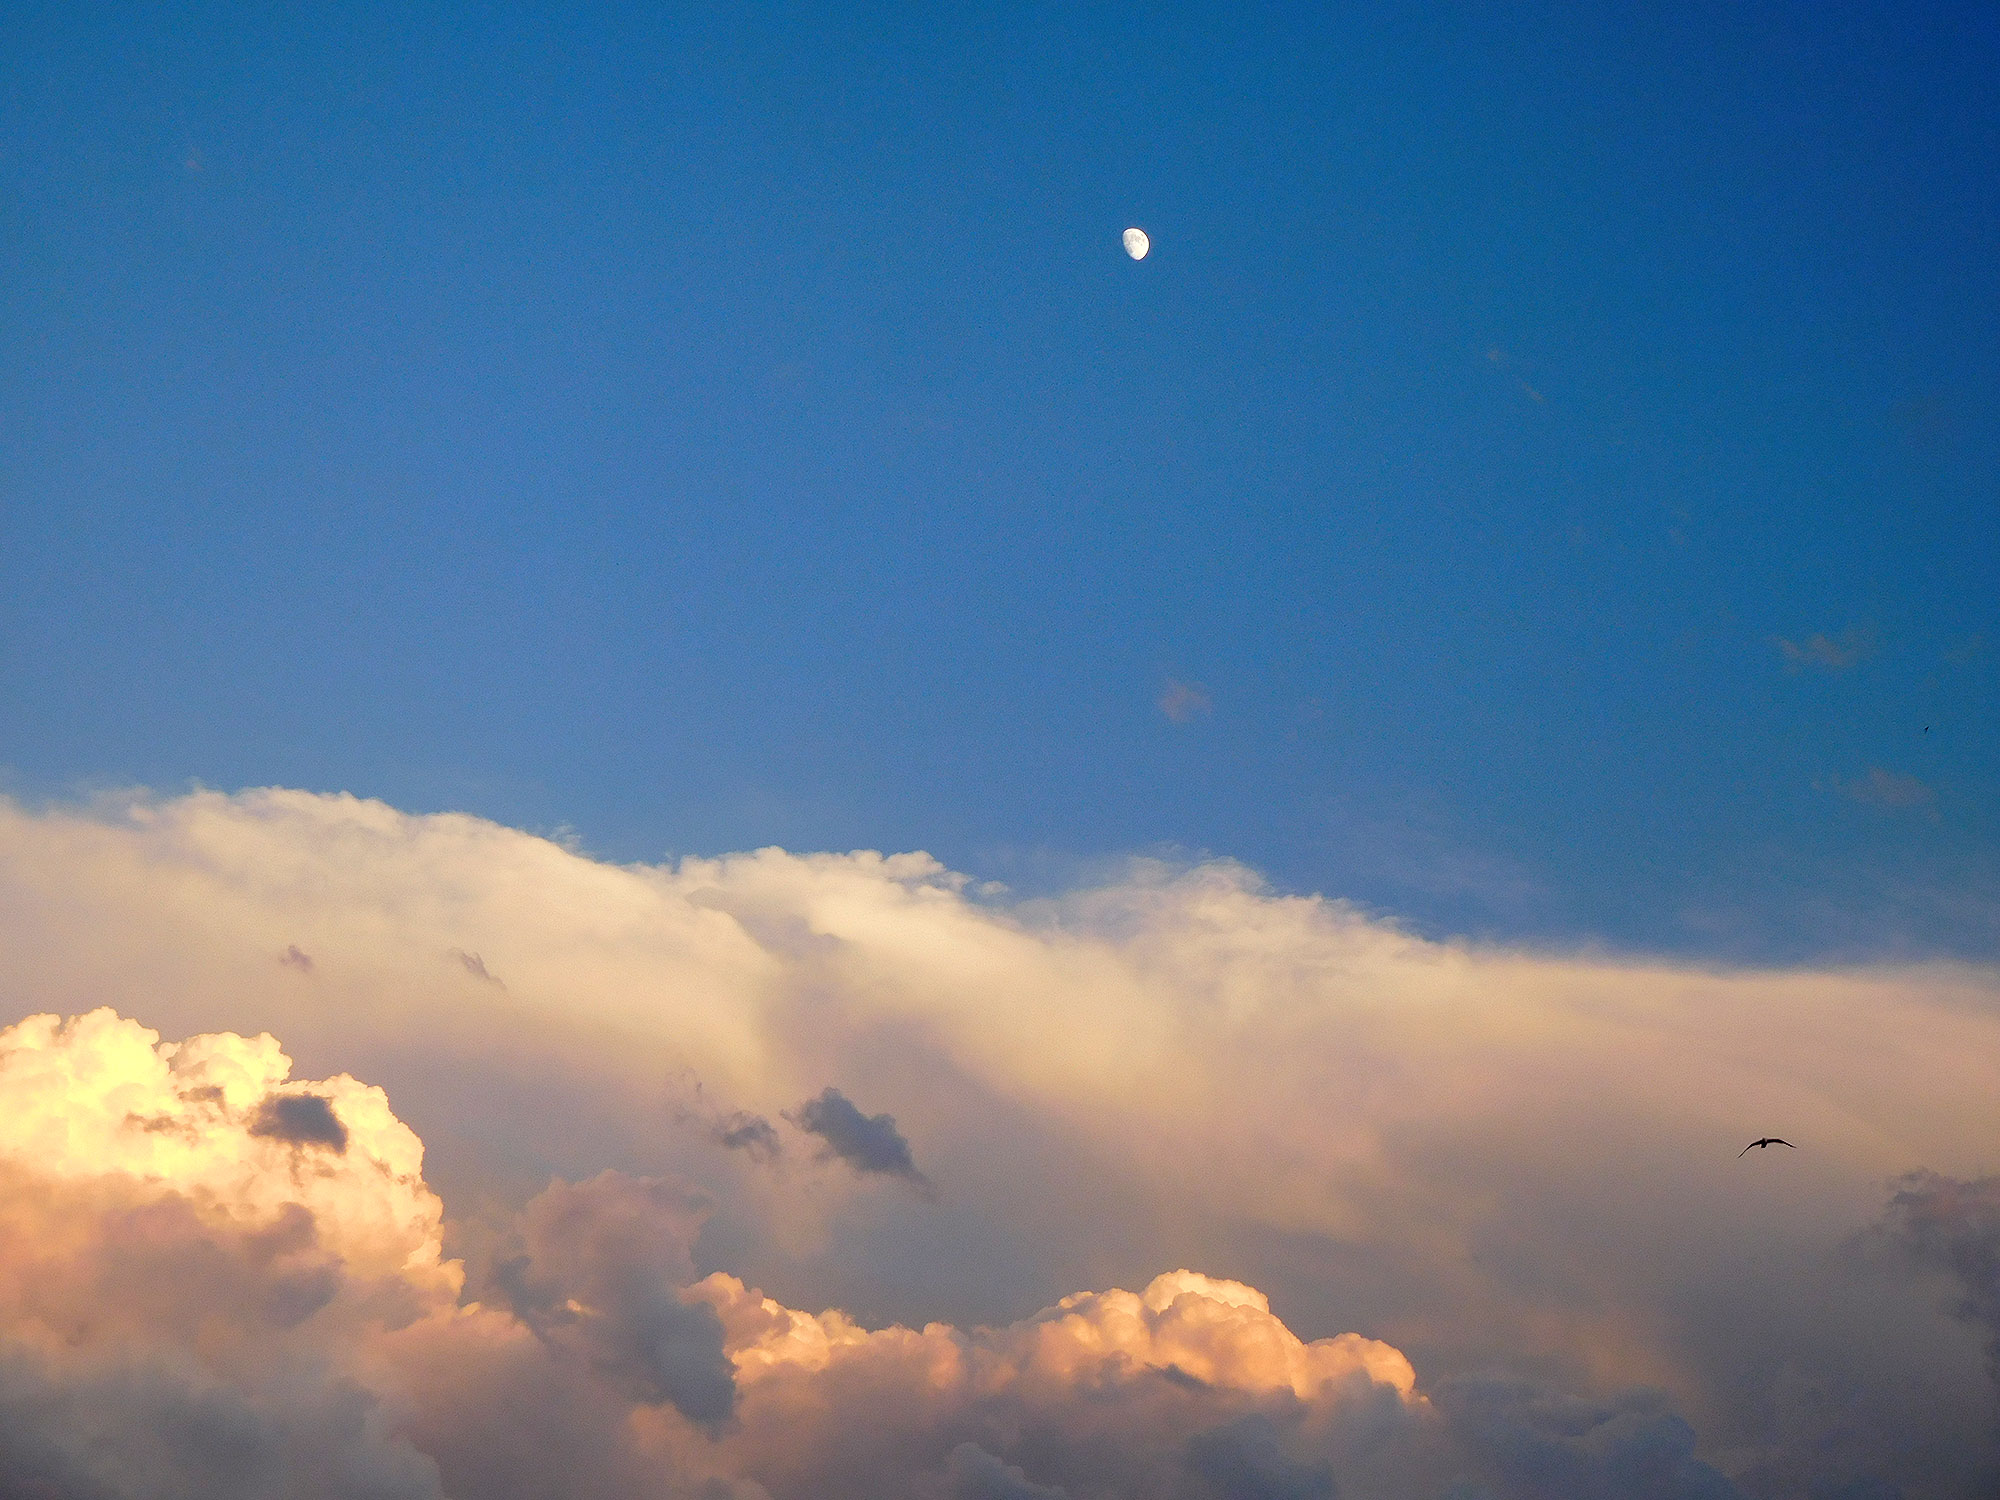 Un cielo azul al anochecer. Un mar de nubes anaranjadas cubre toda la parte baja. En lo alto, sobre un fondo completamente claro, una pequeña luna casi llena.